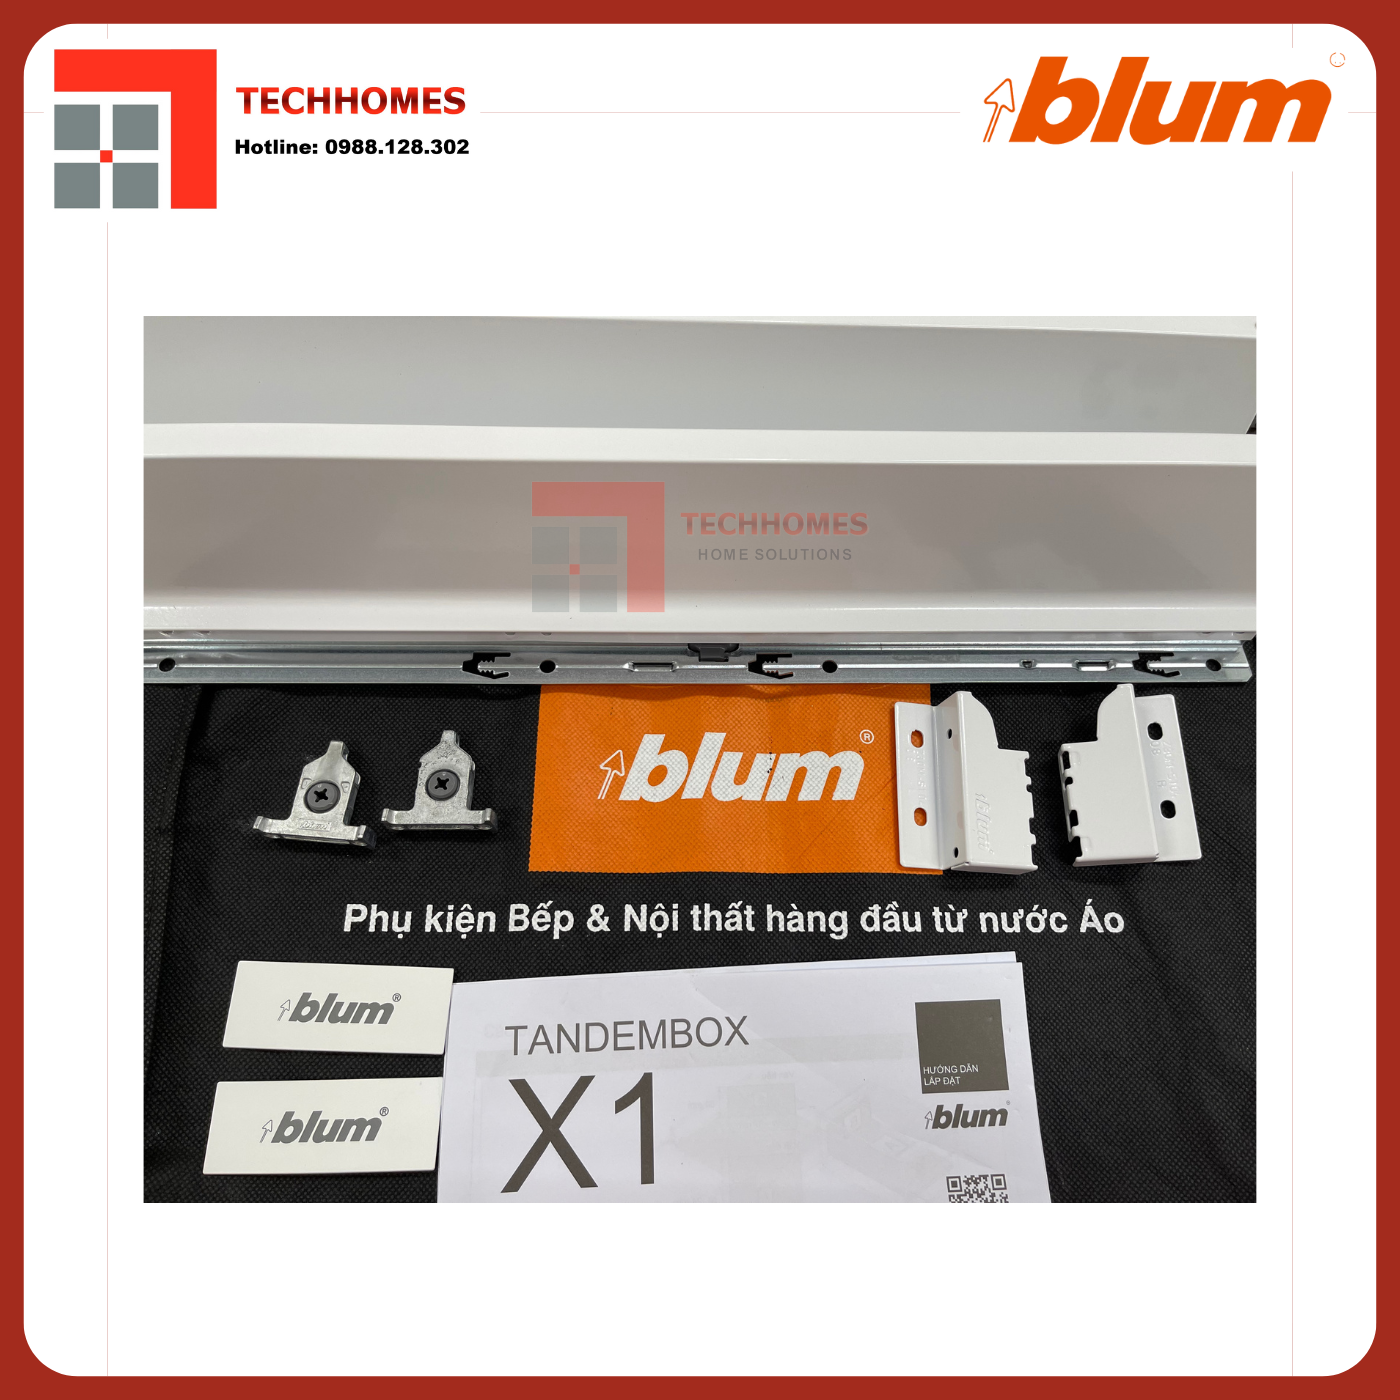 Ray hộp Blum TANDEMBOX X1 4279786 TRẮNG